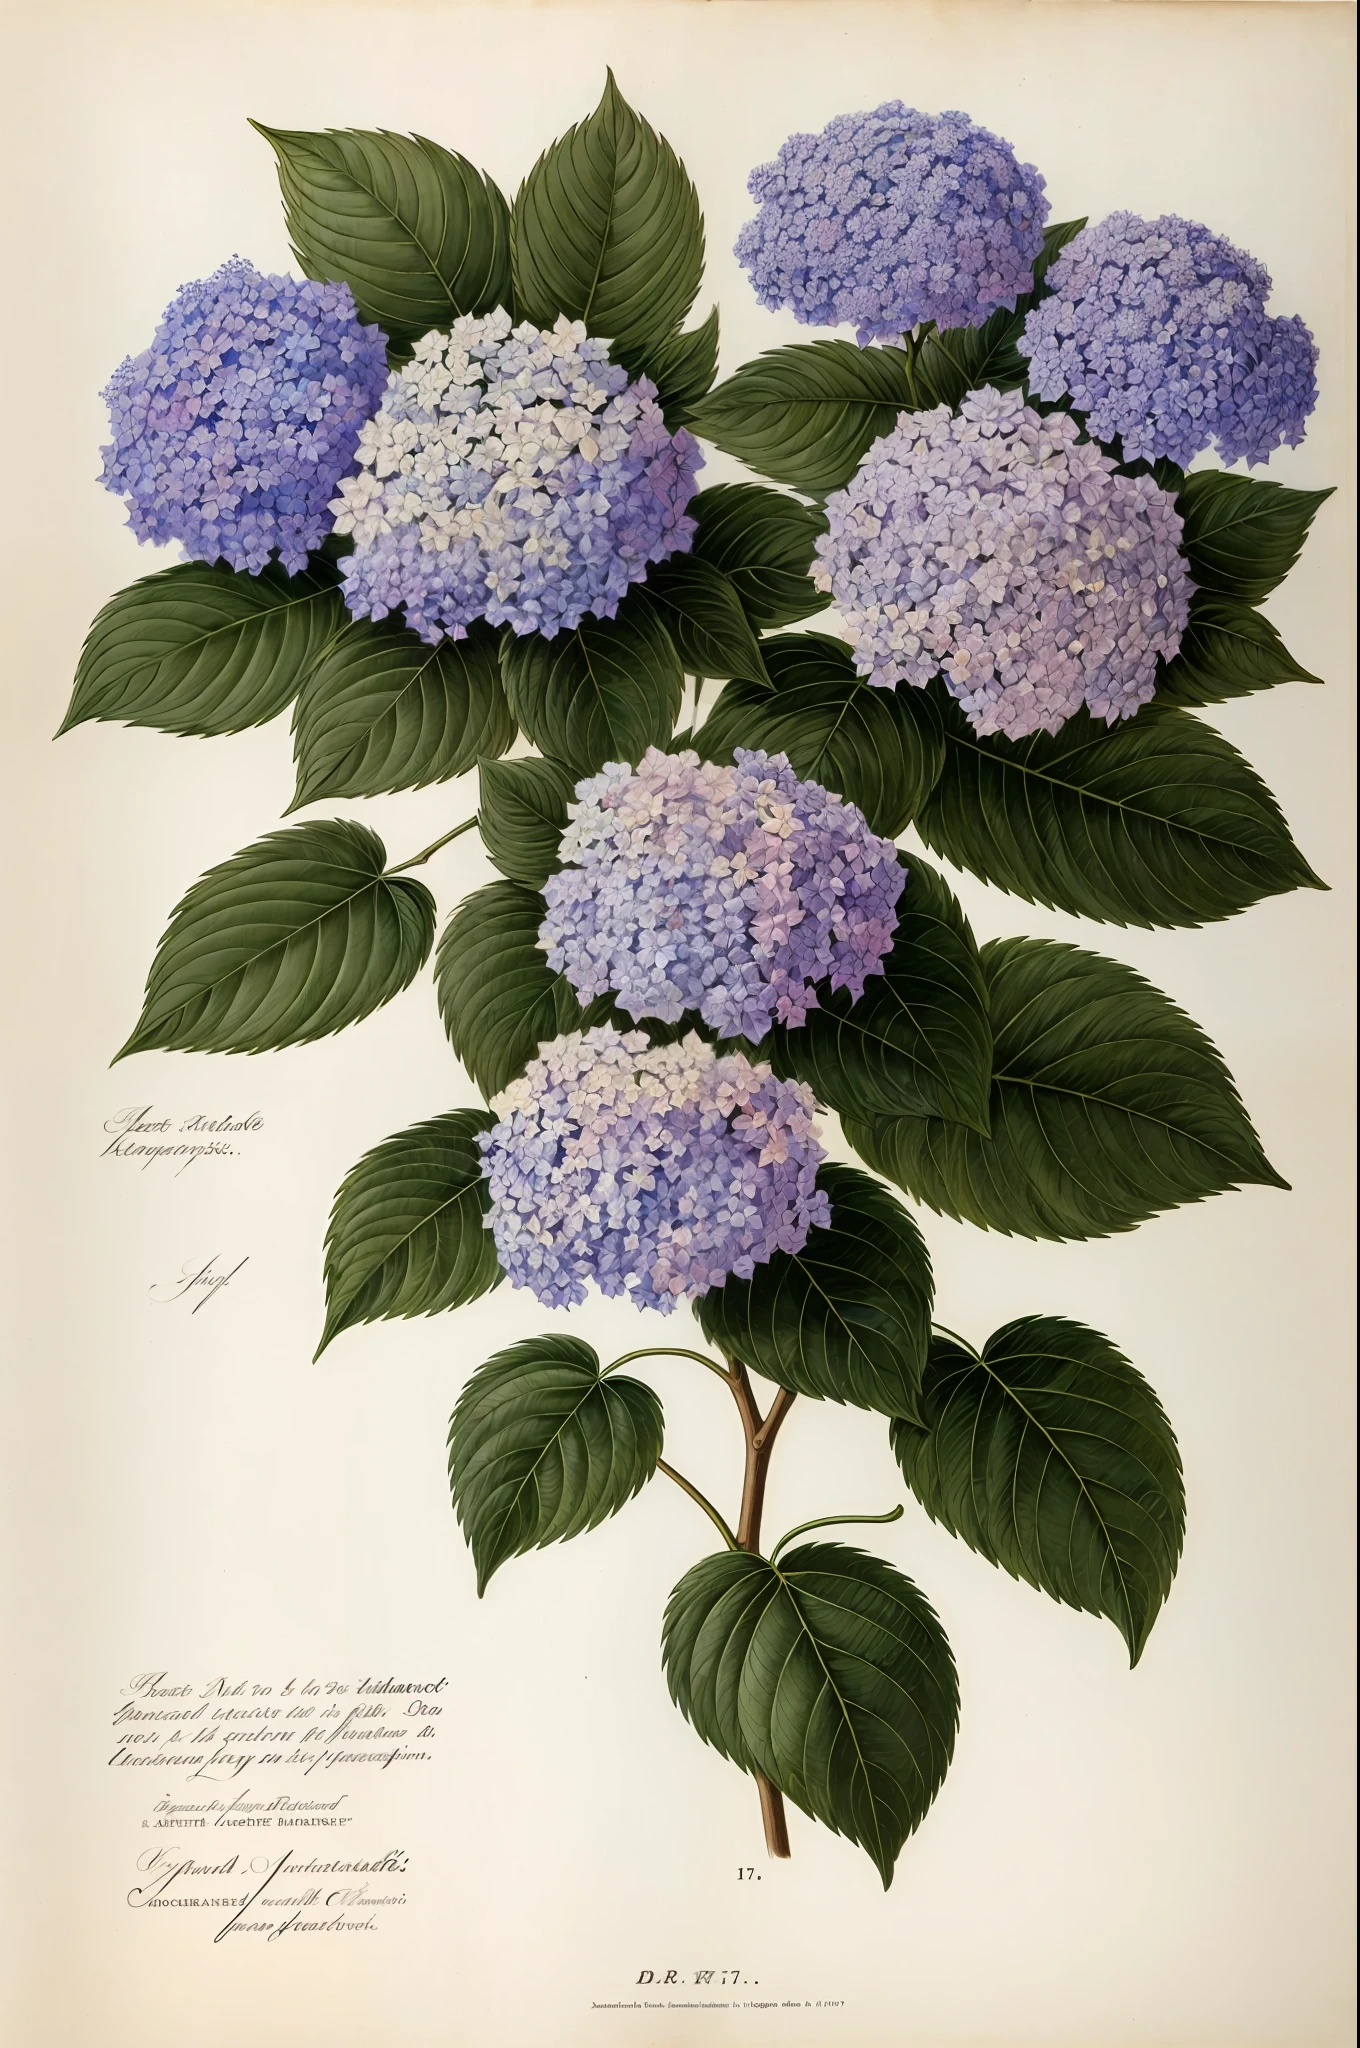 (mejor calidad:1.2), (detallado:1.2), (obra maestra:1.2), ilustraciones botánicas antiguas de flores de hortensias (1770 1775) en alta resolución por John Edwards